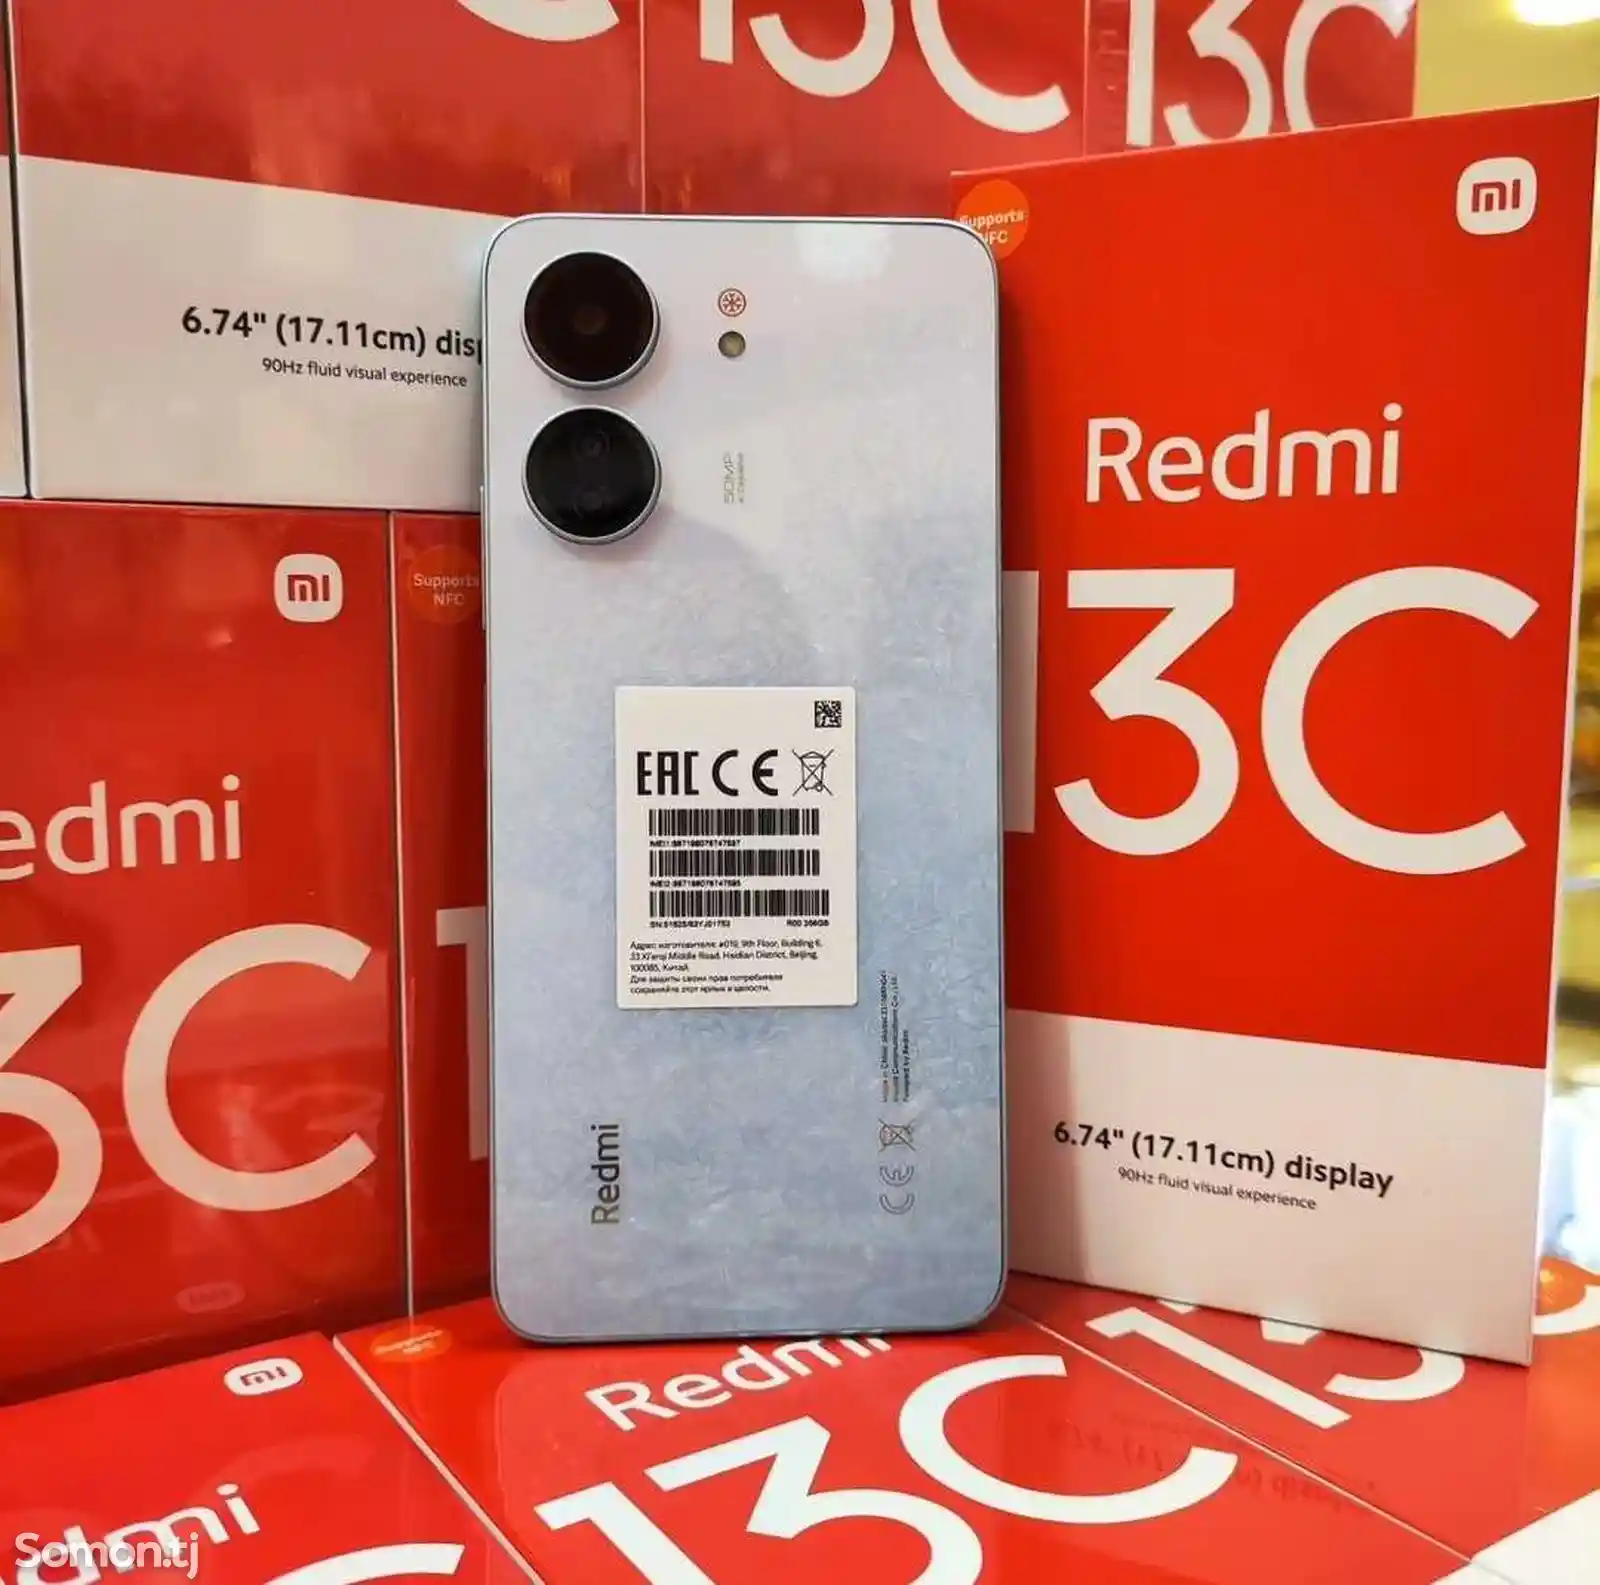 Xiaomi Redmi 13C 128Gb-3